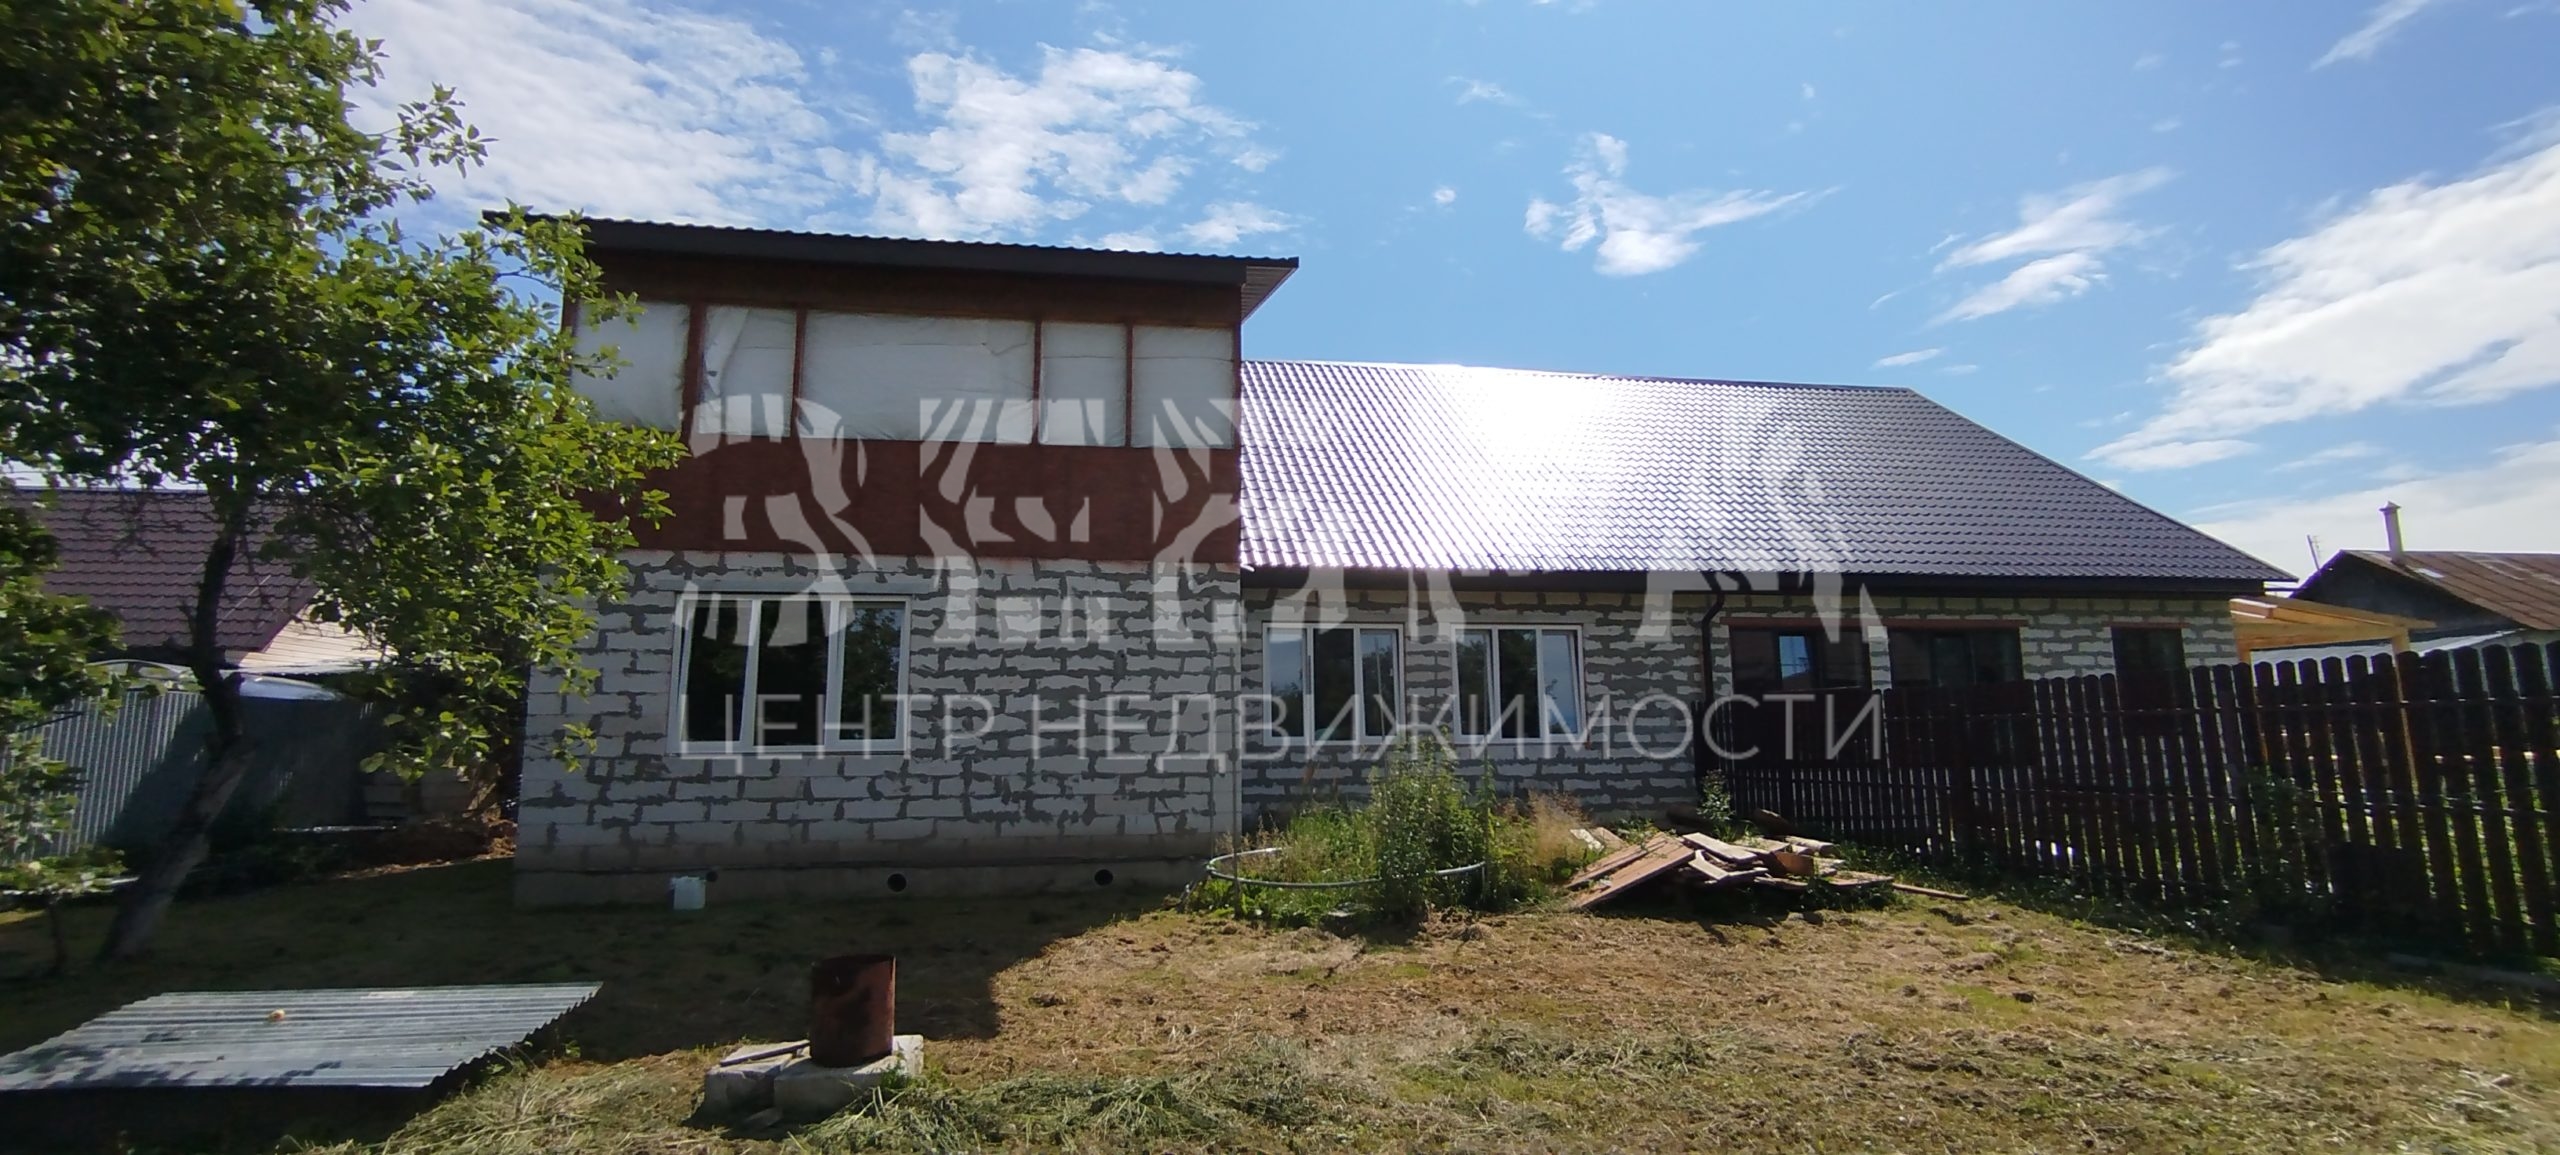 Продается дом в поселке МАЯК, Александровского района